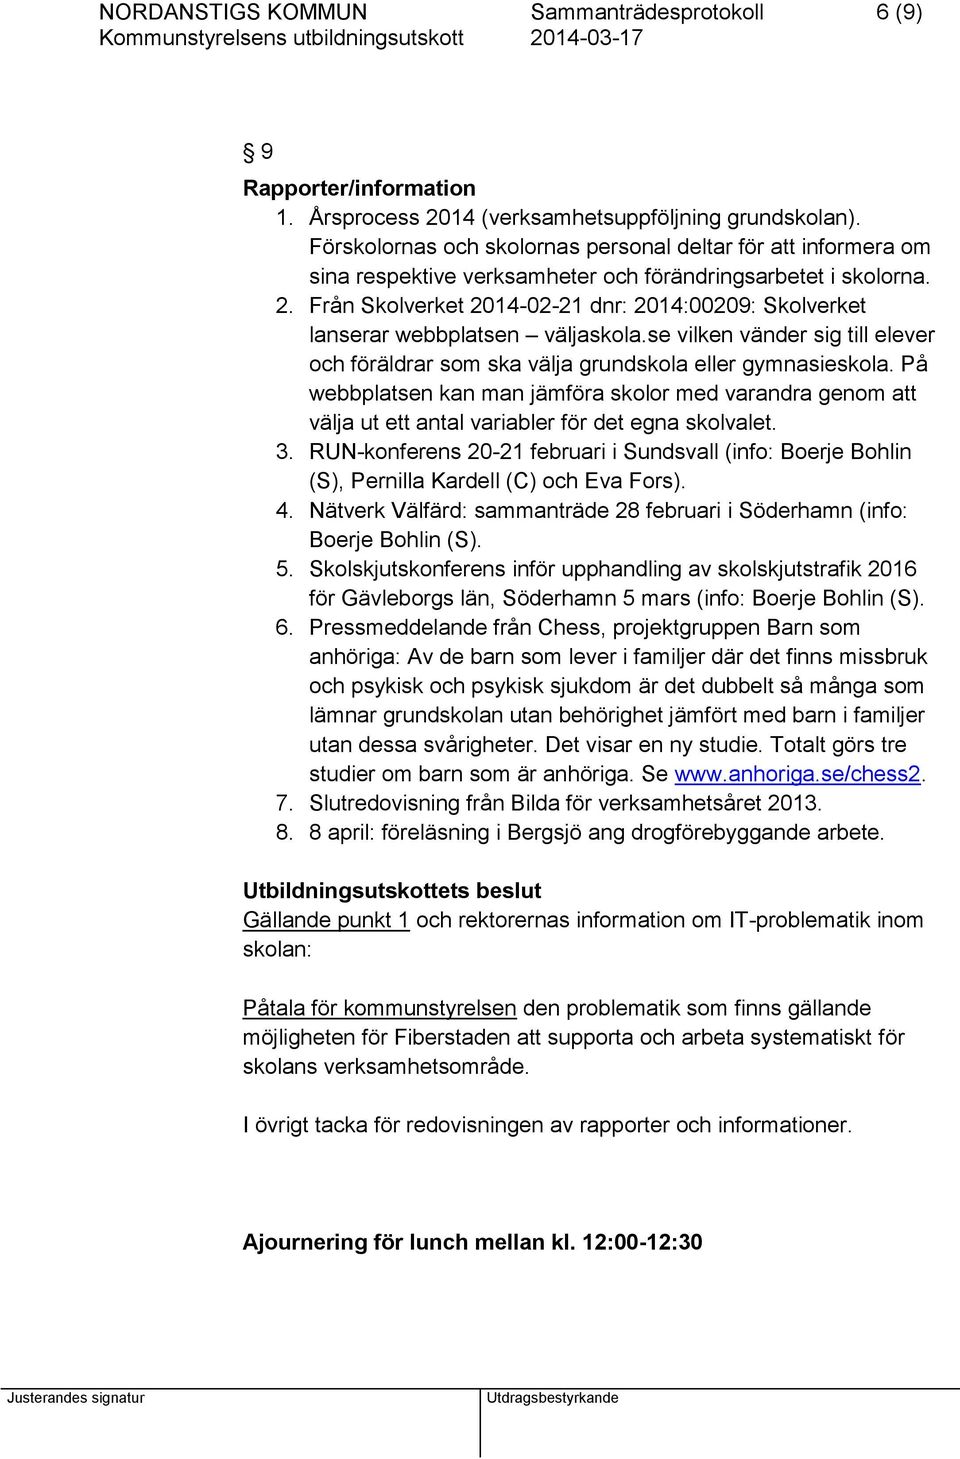 Från Skolverket 2014-02-21 dnr: 2014:00209: Skolverket lanserar webbplatsen väljaskola.se vilken vänder sig till elever och föräldrar som ska välja grundskola eller gymnasieskola.